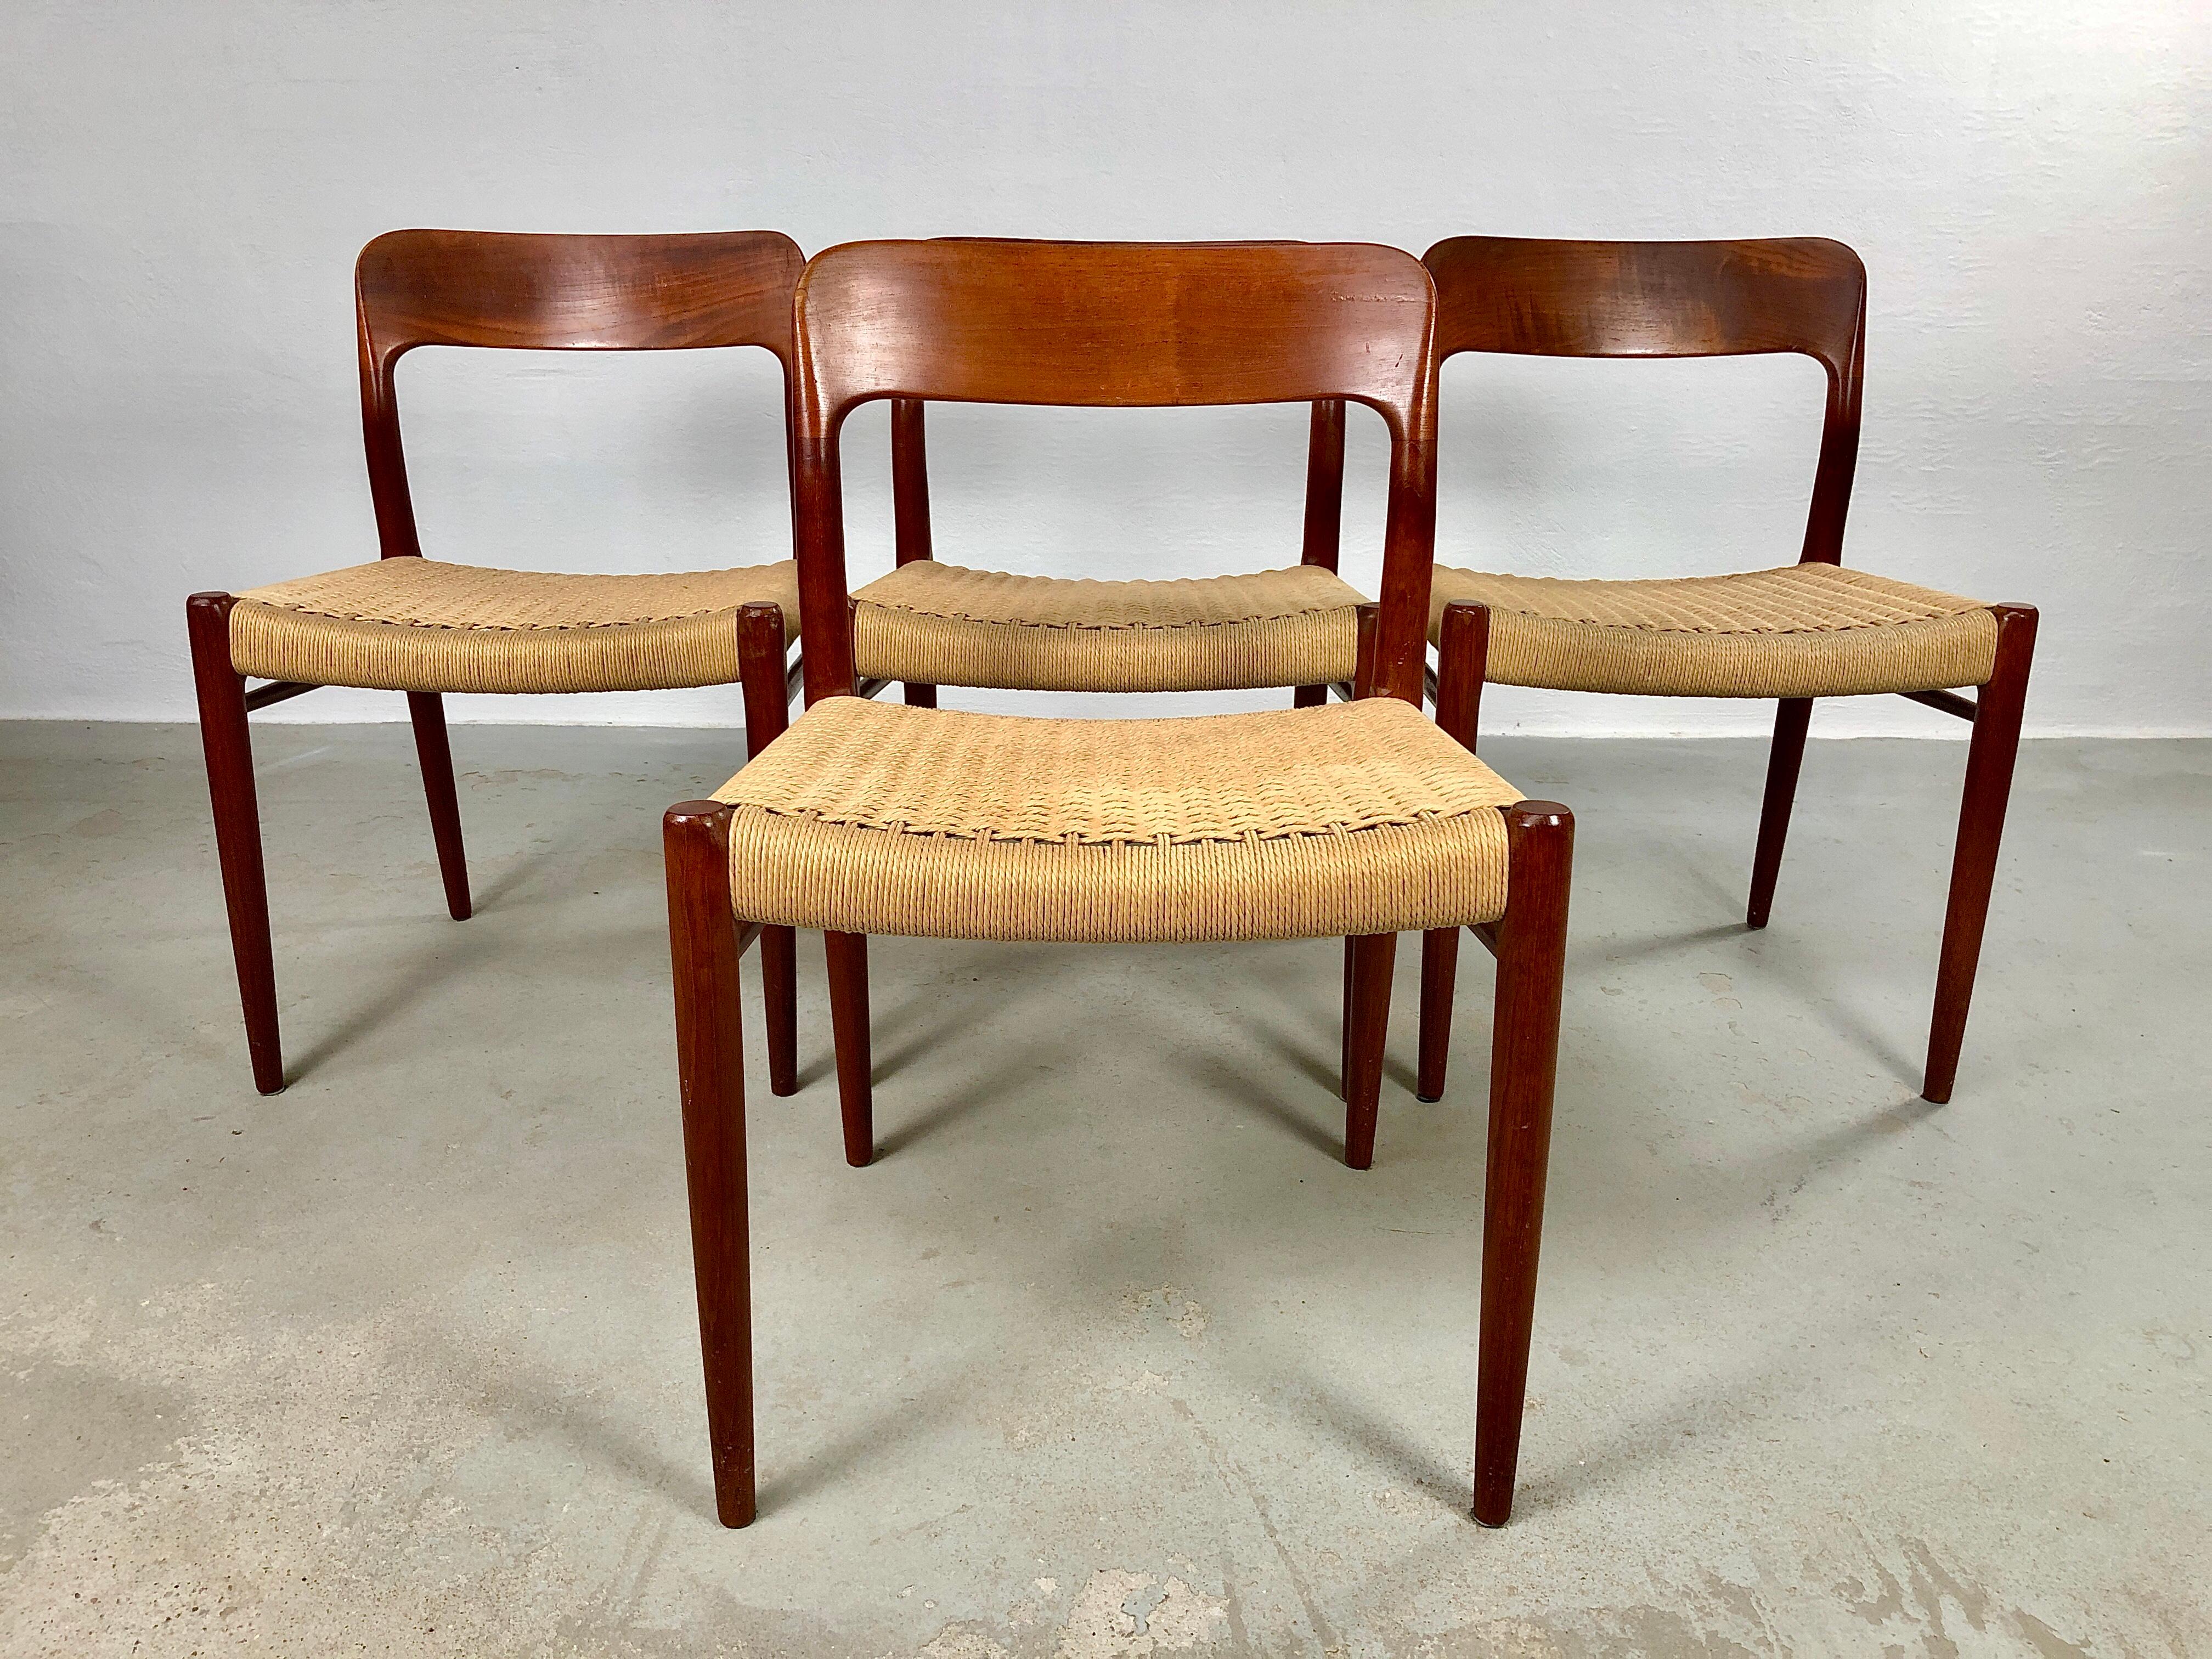 Satz von vier vollständig restaurierten Niels Otto Møller Modell 77 Esszimmerstühlen aus Teakholz mit Papierkordelsitzen, entworfen von Niels Otto Møller im Jahr 1959 und hergestellt von J.L. Møllers Møbelfabrik in den 1960er Jahren.

Niels Otto